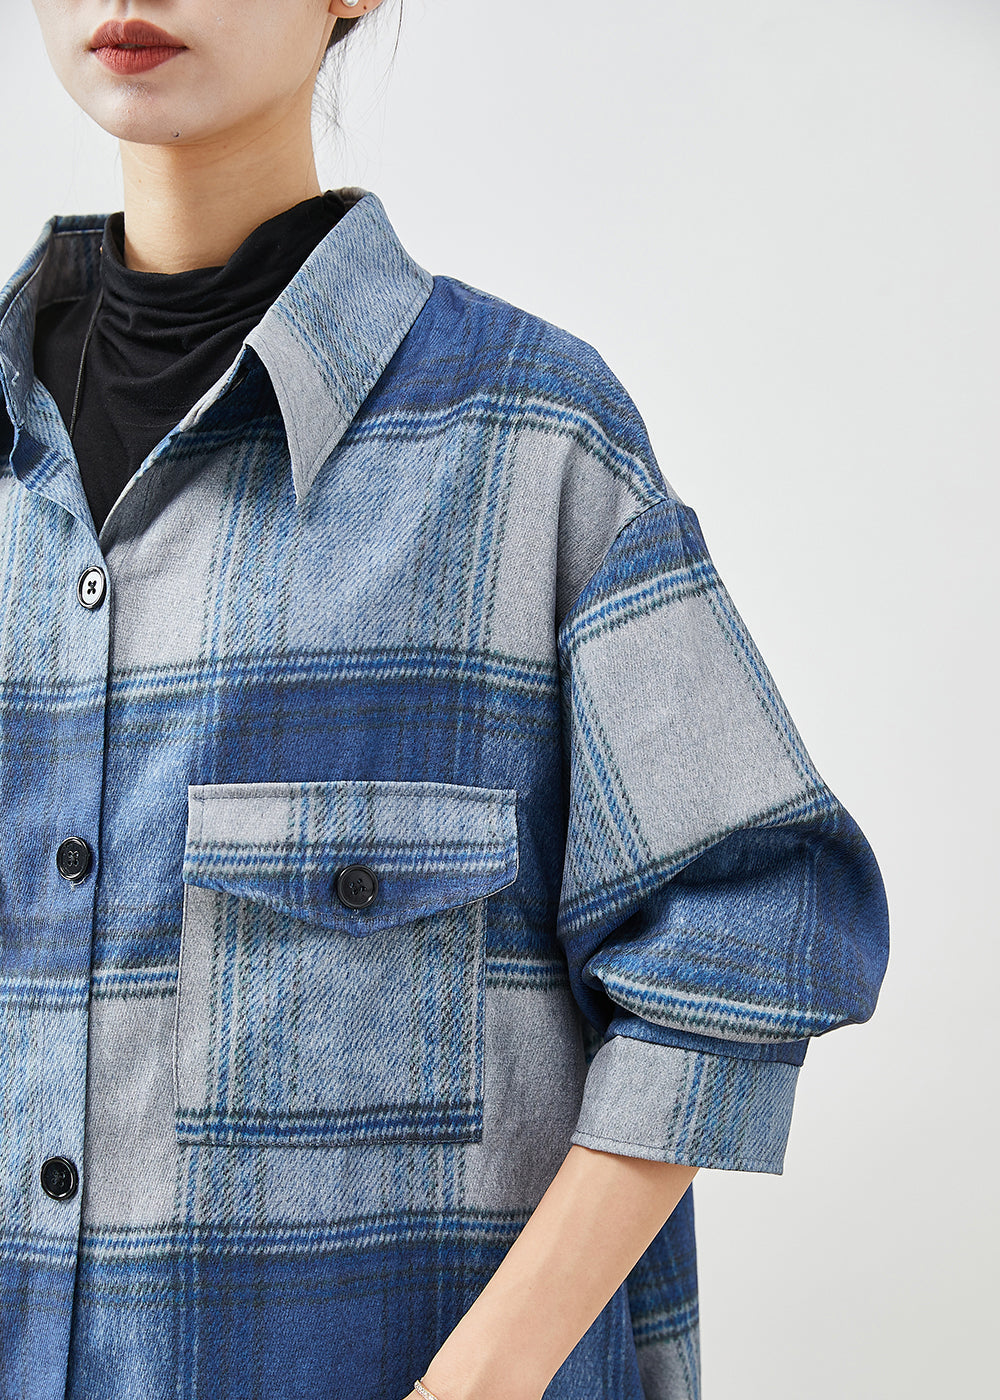 Handmade Blue Plaid Woolen Shirt Trench Coats Fall